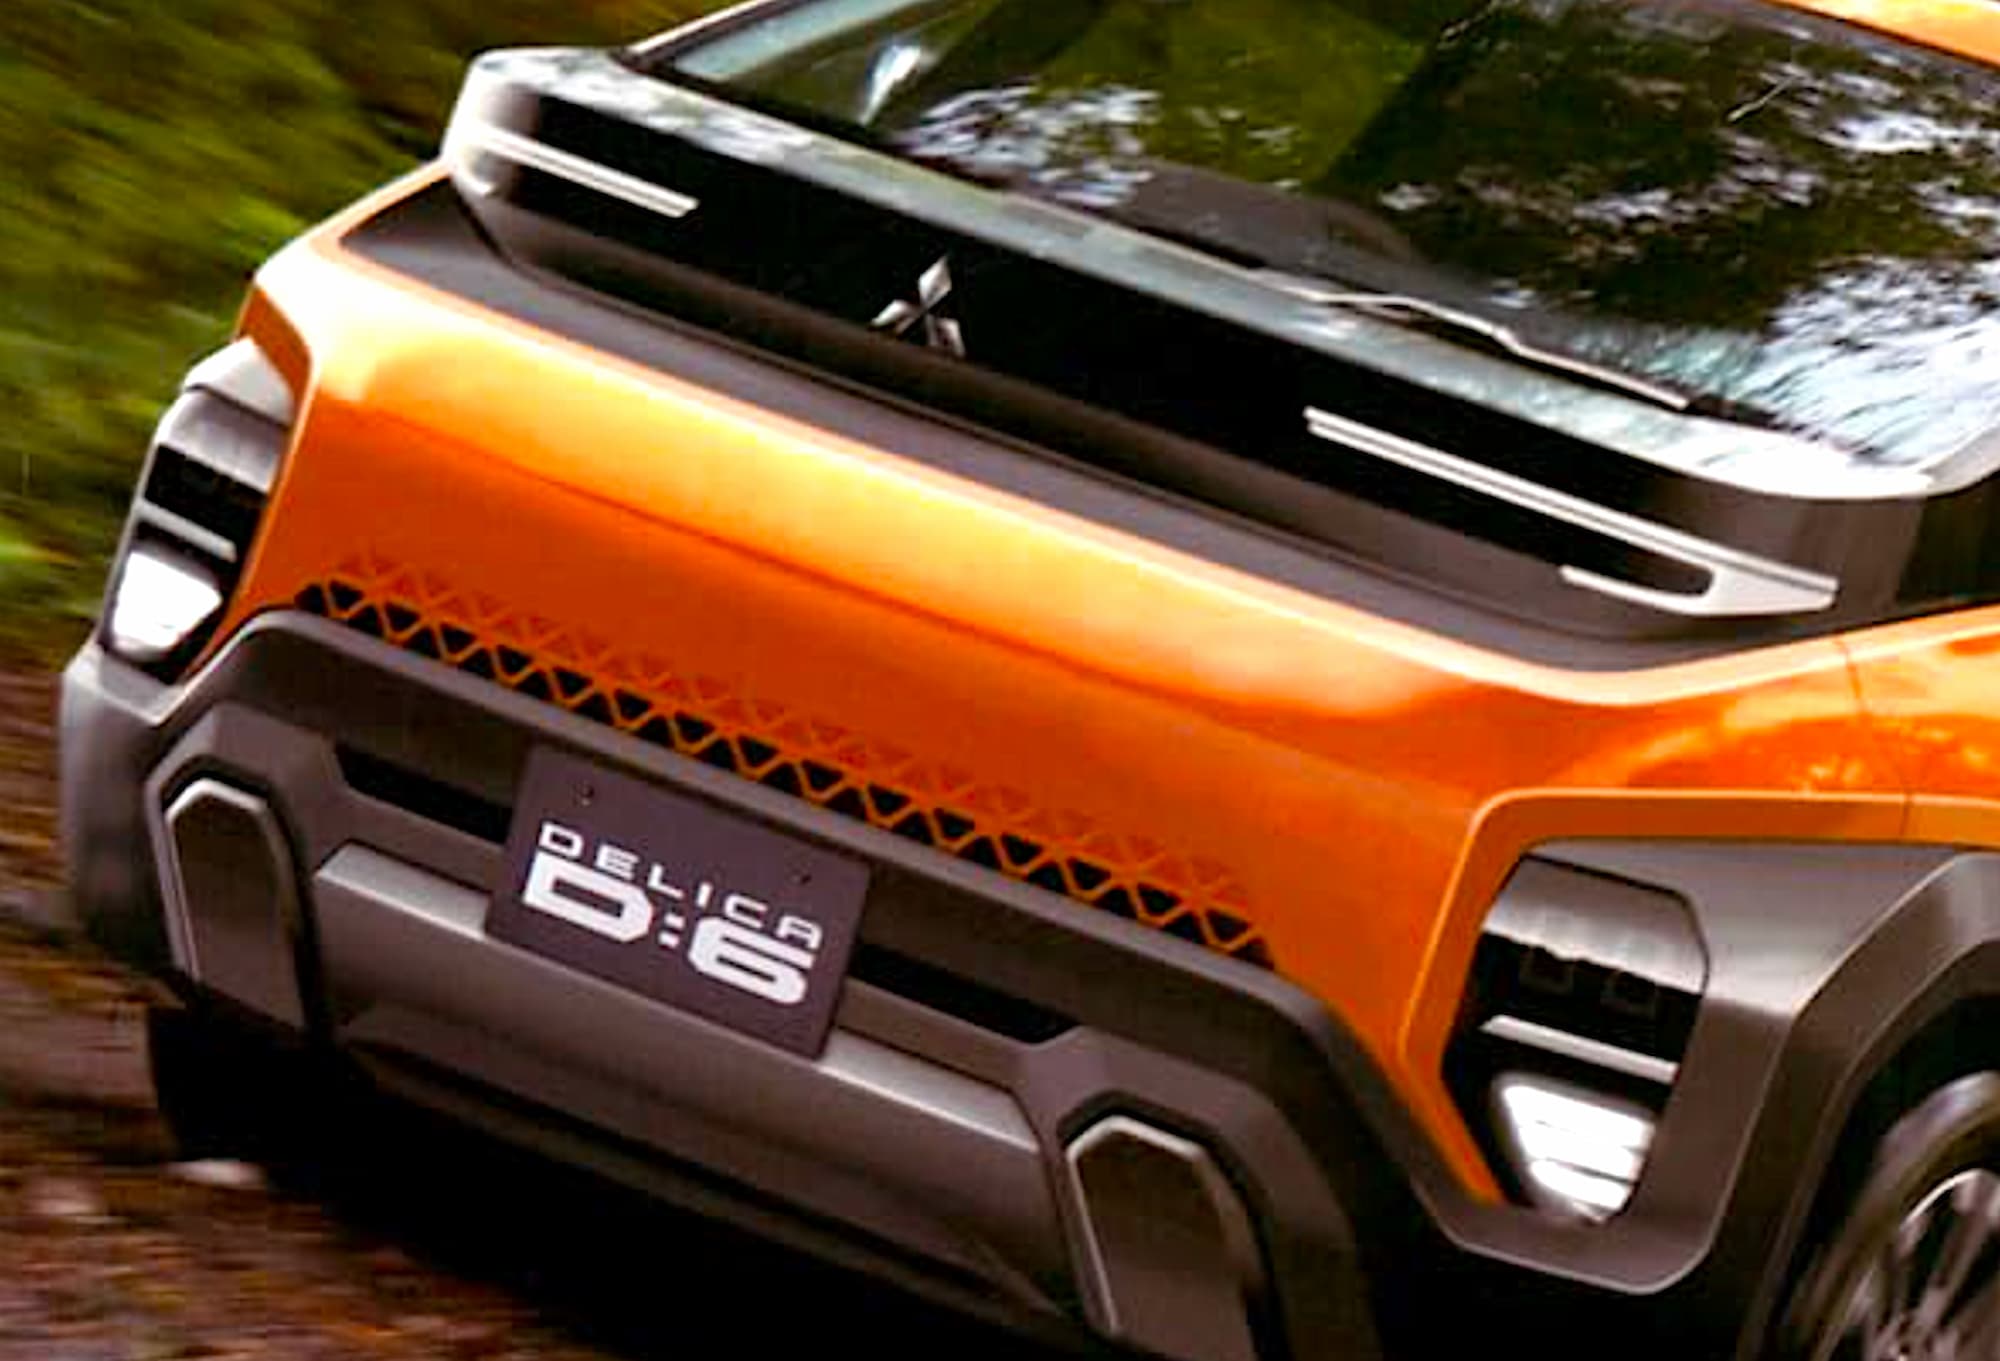 Новый внедорожный минивэн Mitsubishi Delica D:6 впервые показался во всей красе в товарном виде